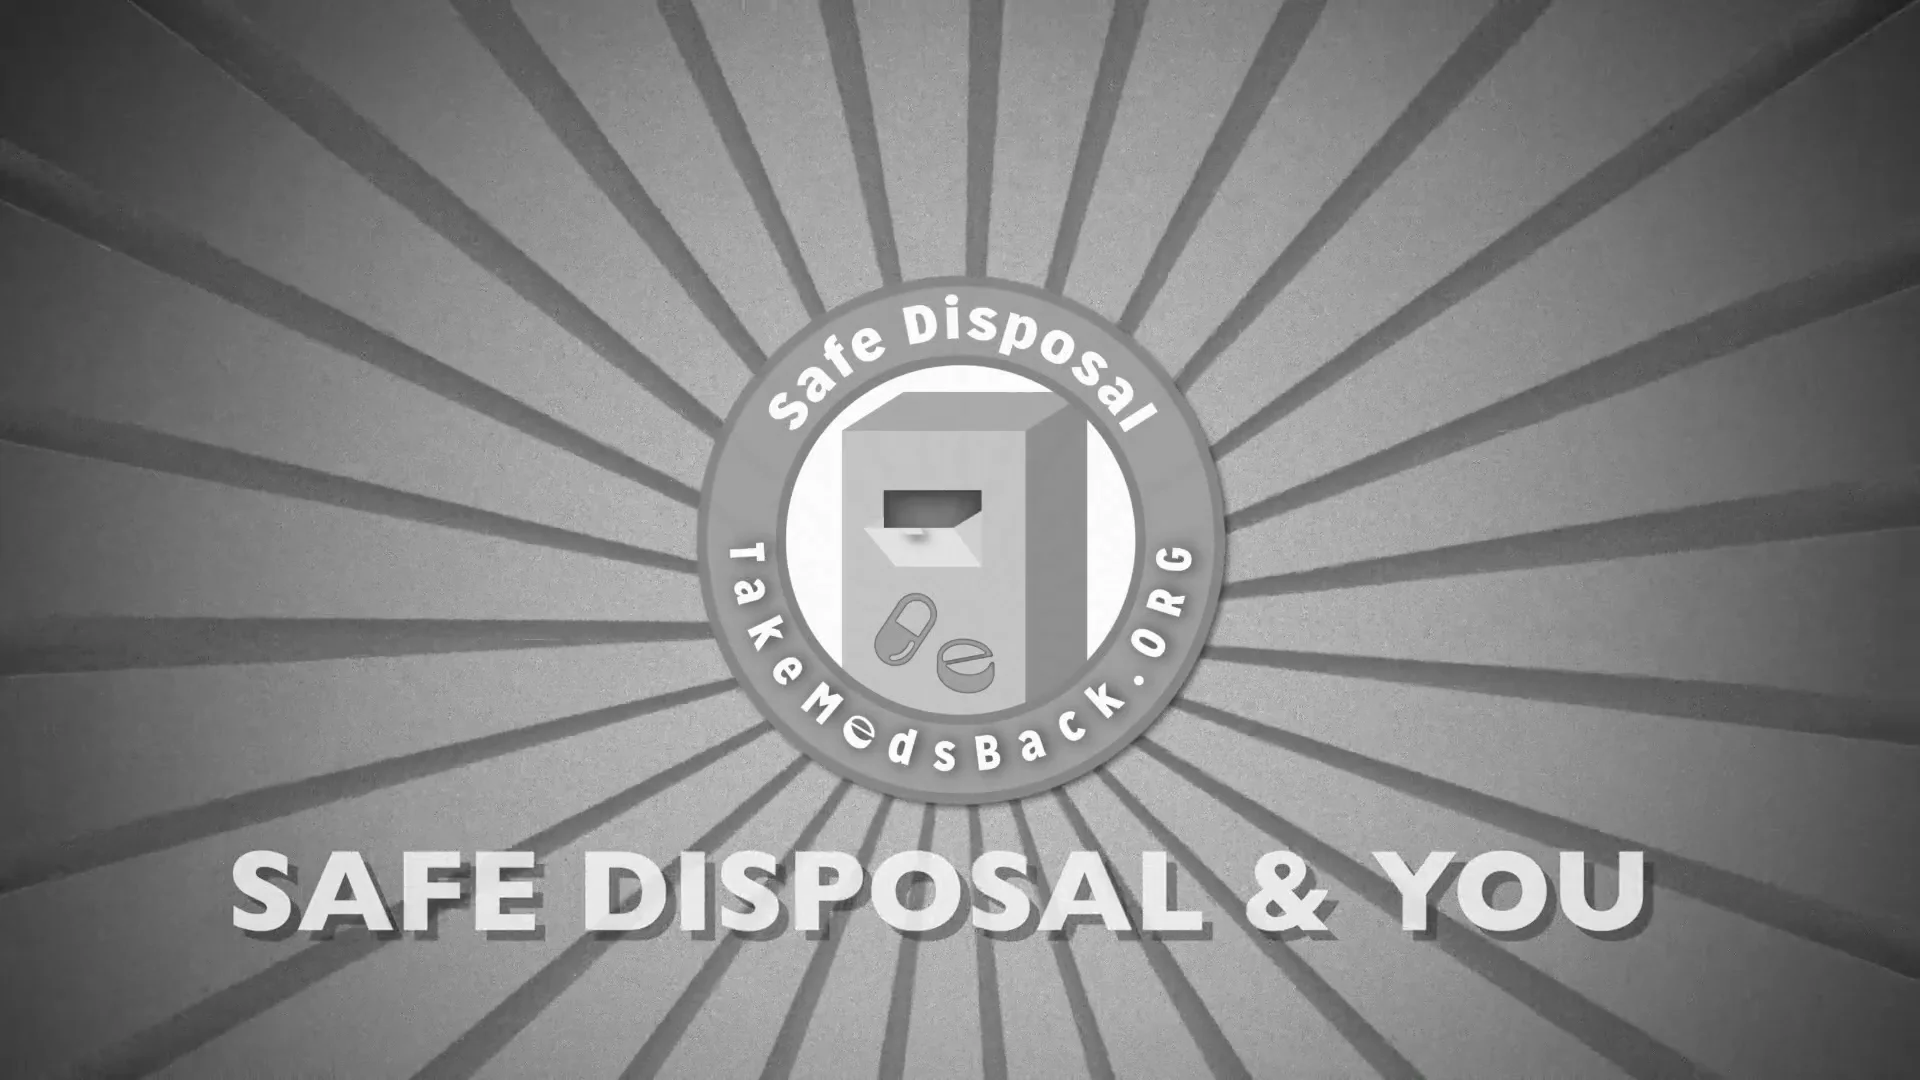 Safe Disposal & You - TakeMedsBack.org